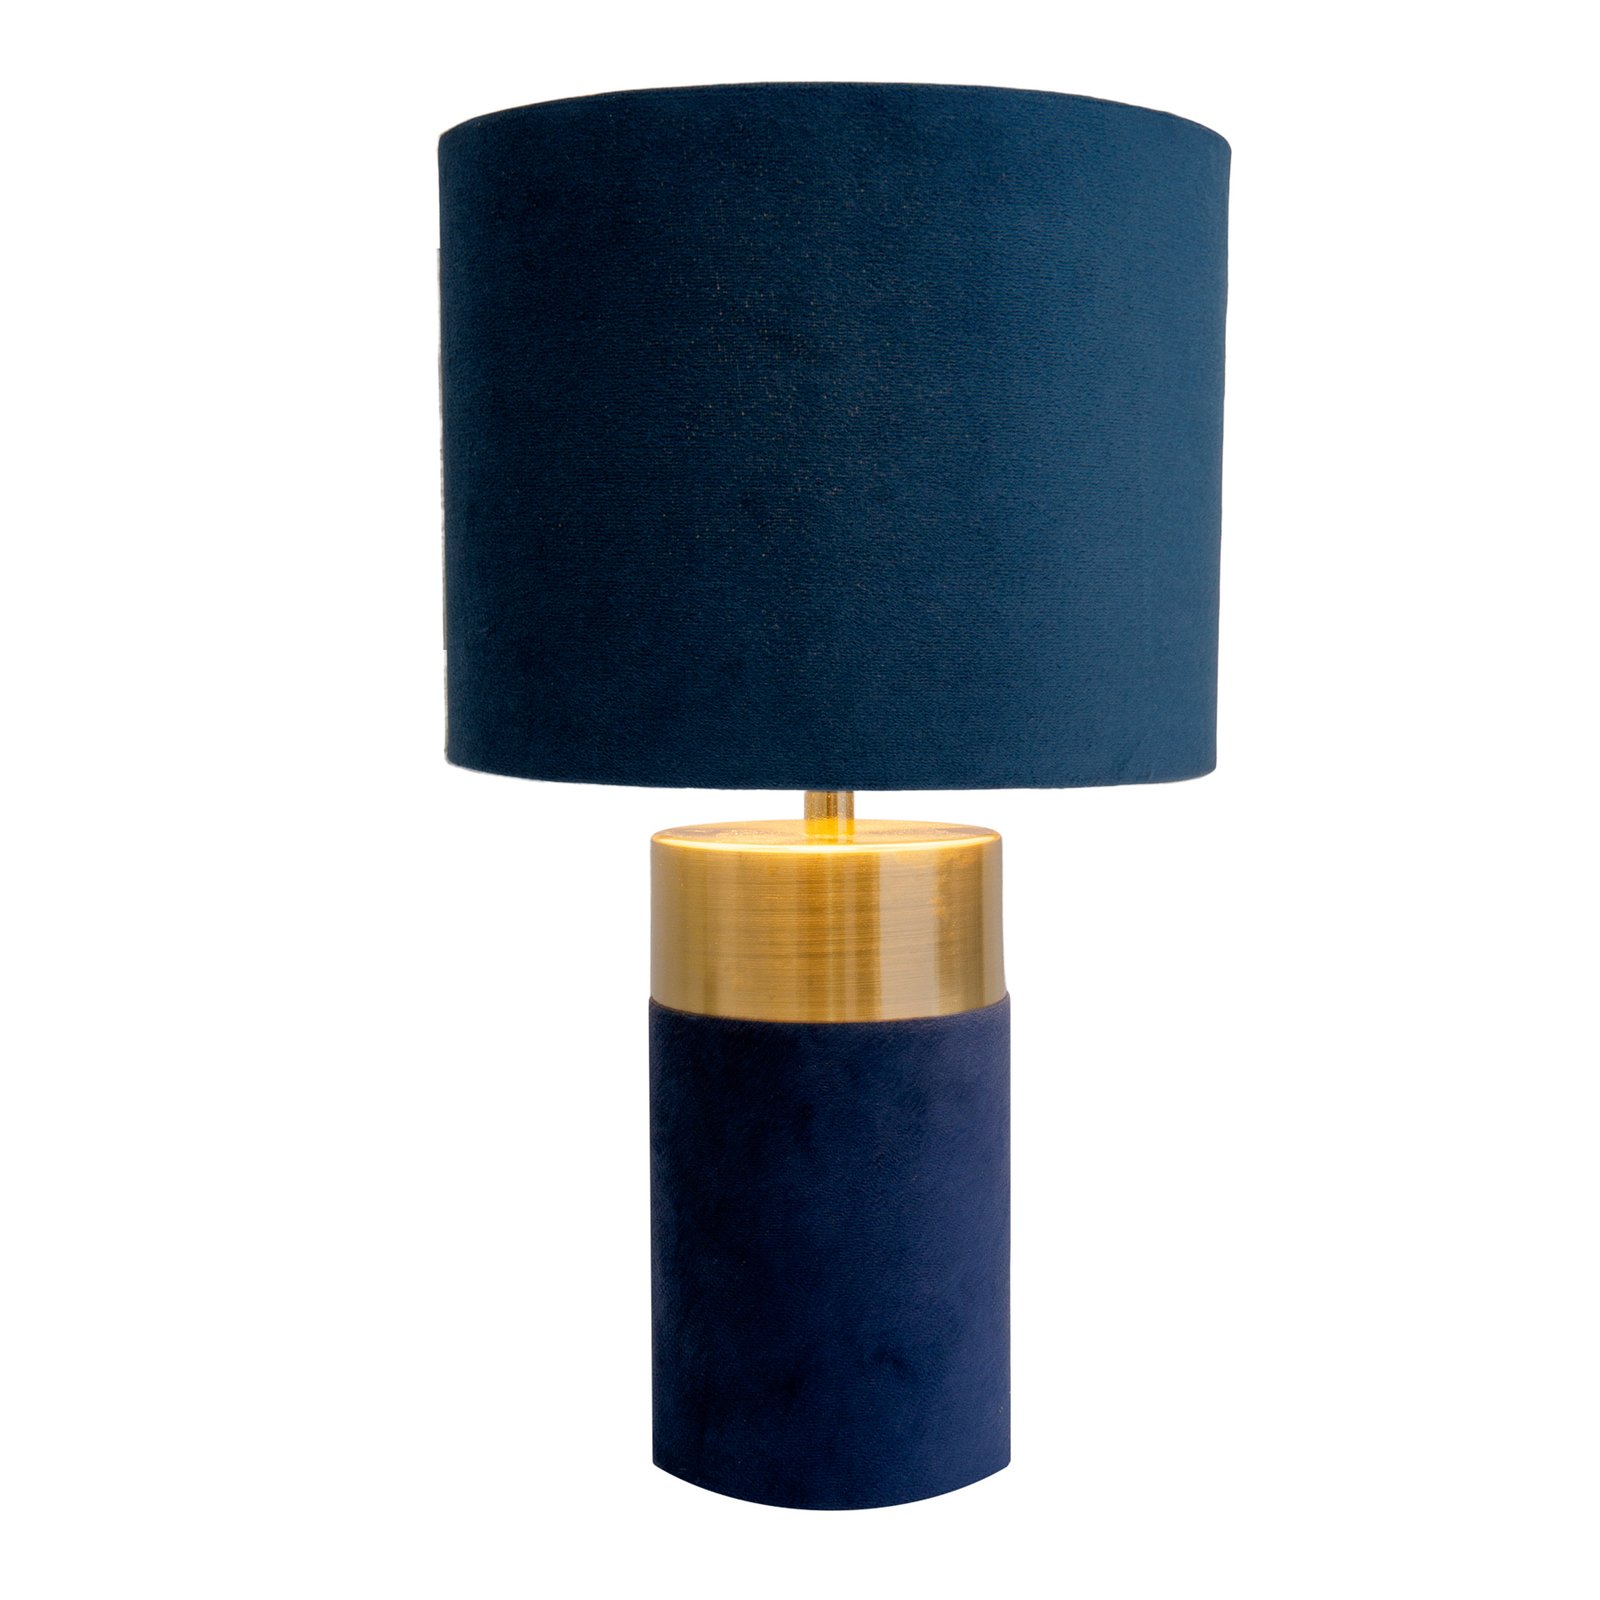 Lampa stołowa 3189512, klosz tekstylny, niebieski